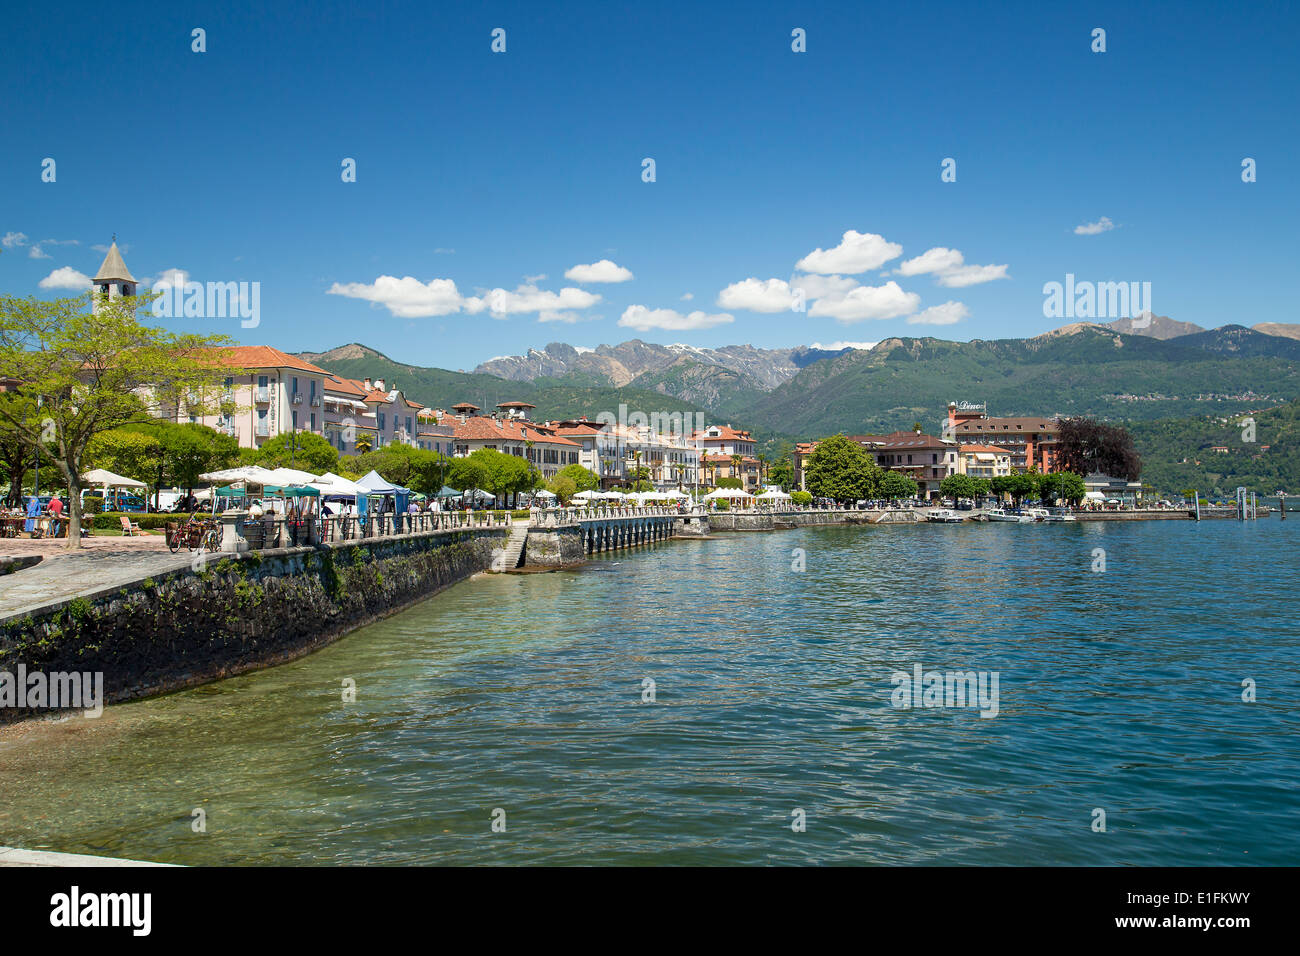 Baveno town on Lake Maggiore, Italy Stock Photo